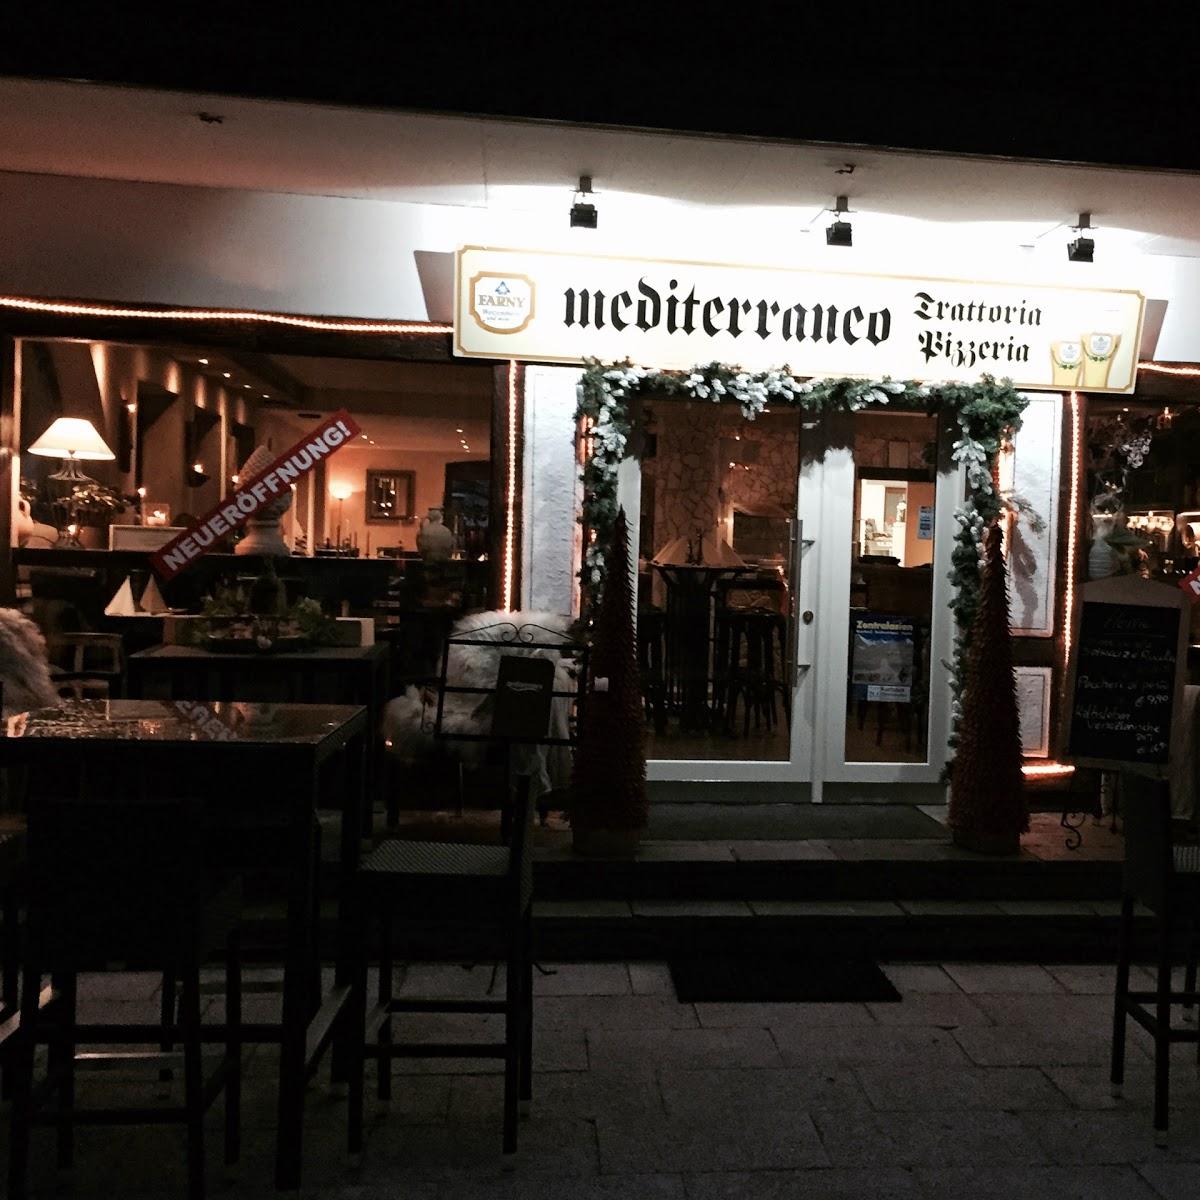 Restaurant "Trattoria Pizzeria Mediterraneo" in  Oberstaufen